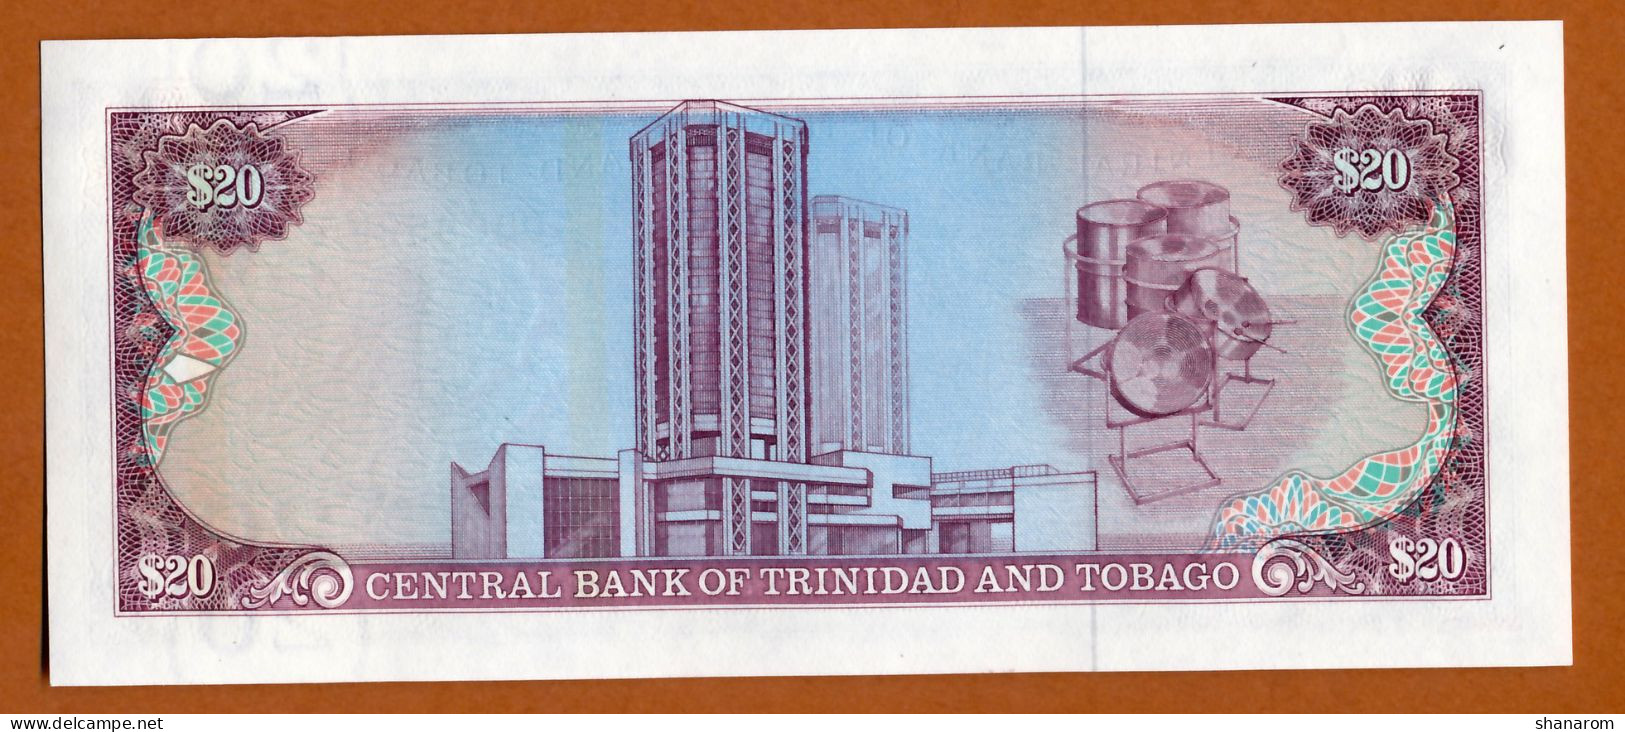 1985 // TRINIDAD AND TOBAGO // CENTRAL BANK // TWENTY DOLLARS // SPL - AU - Trinidad & Tobago